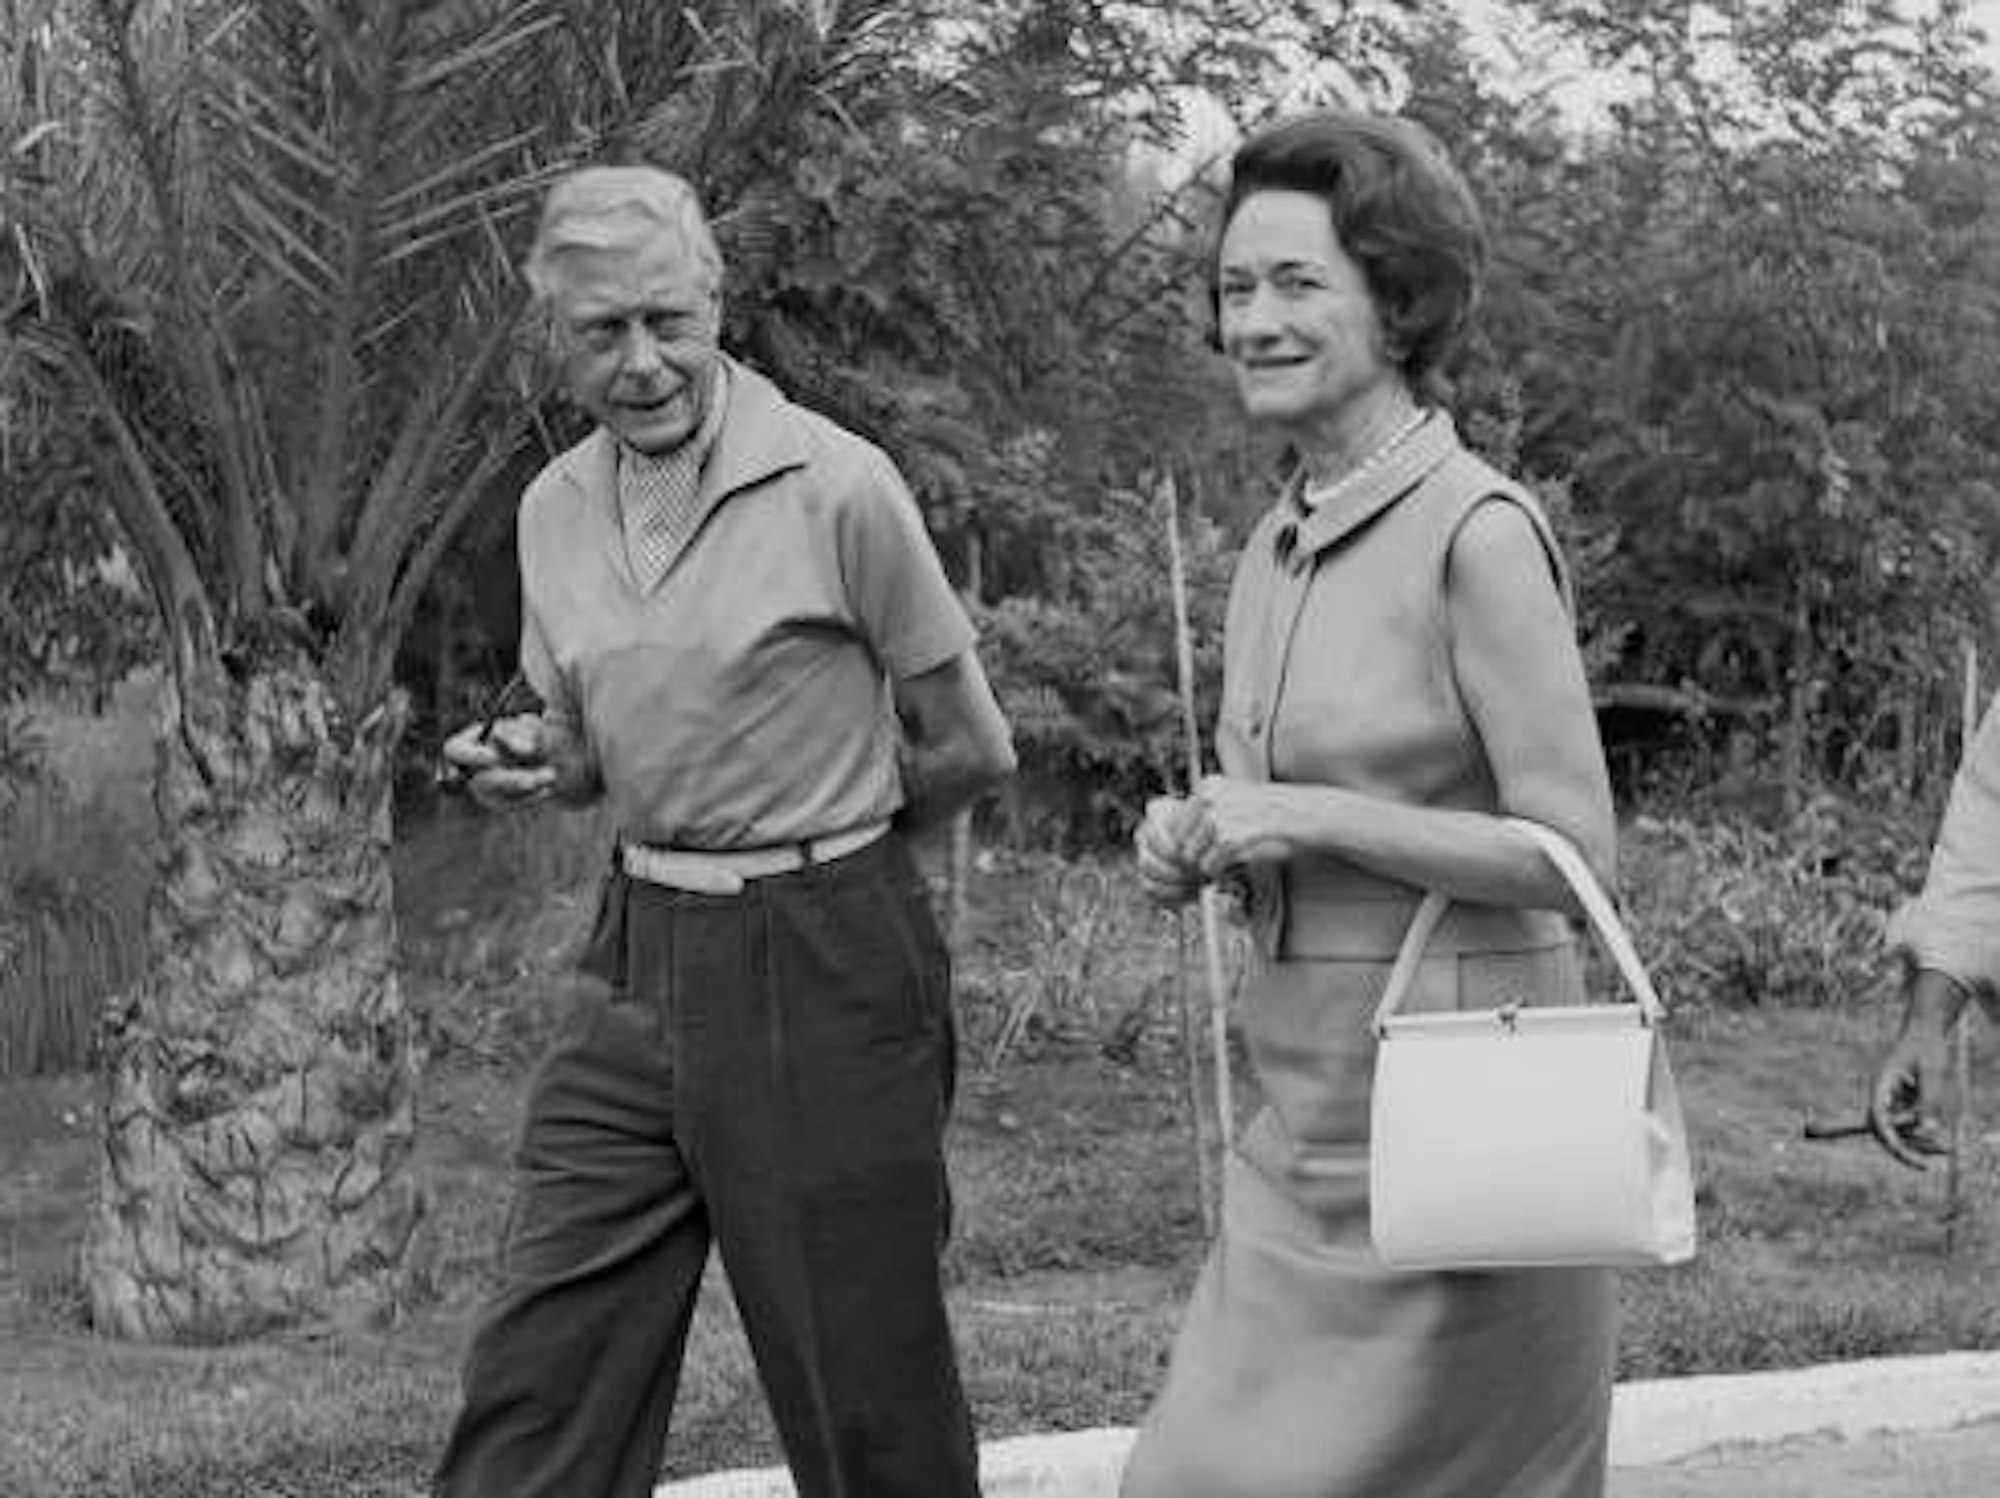 Edward VIII, Duke of Windsor (1894 - 1972) und seine Frau Wallis Simpson, Duchess of Windsor (1896 - 1986), 1963 im Spanien-Urlaub